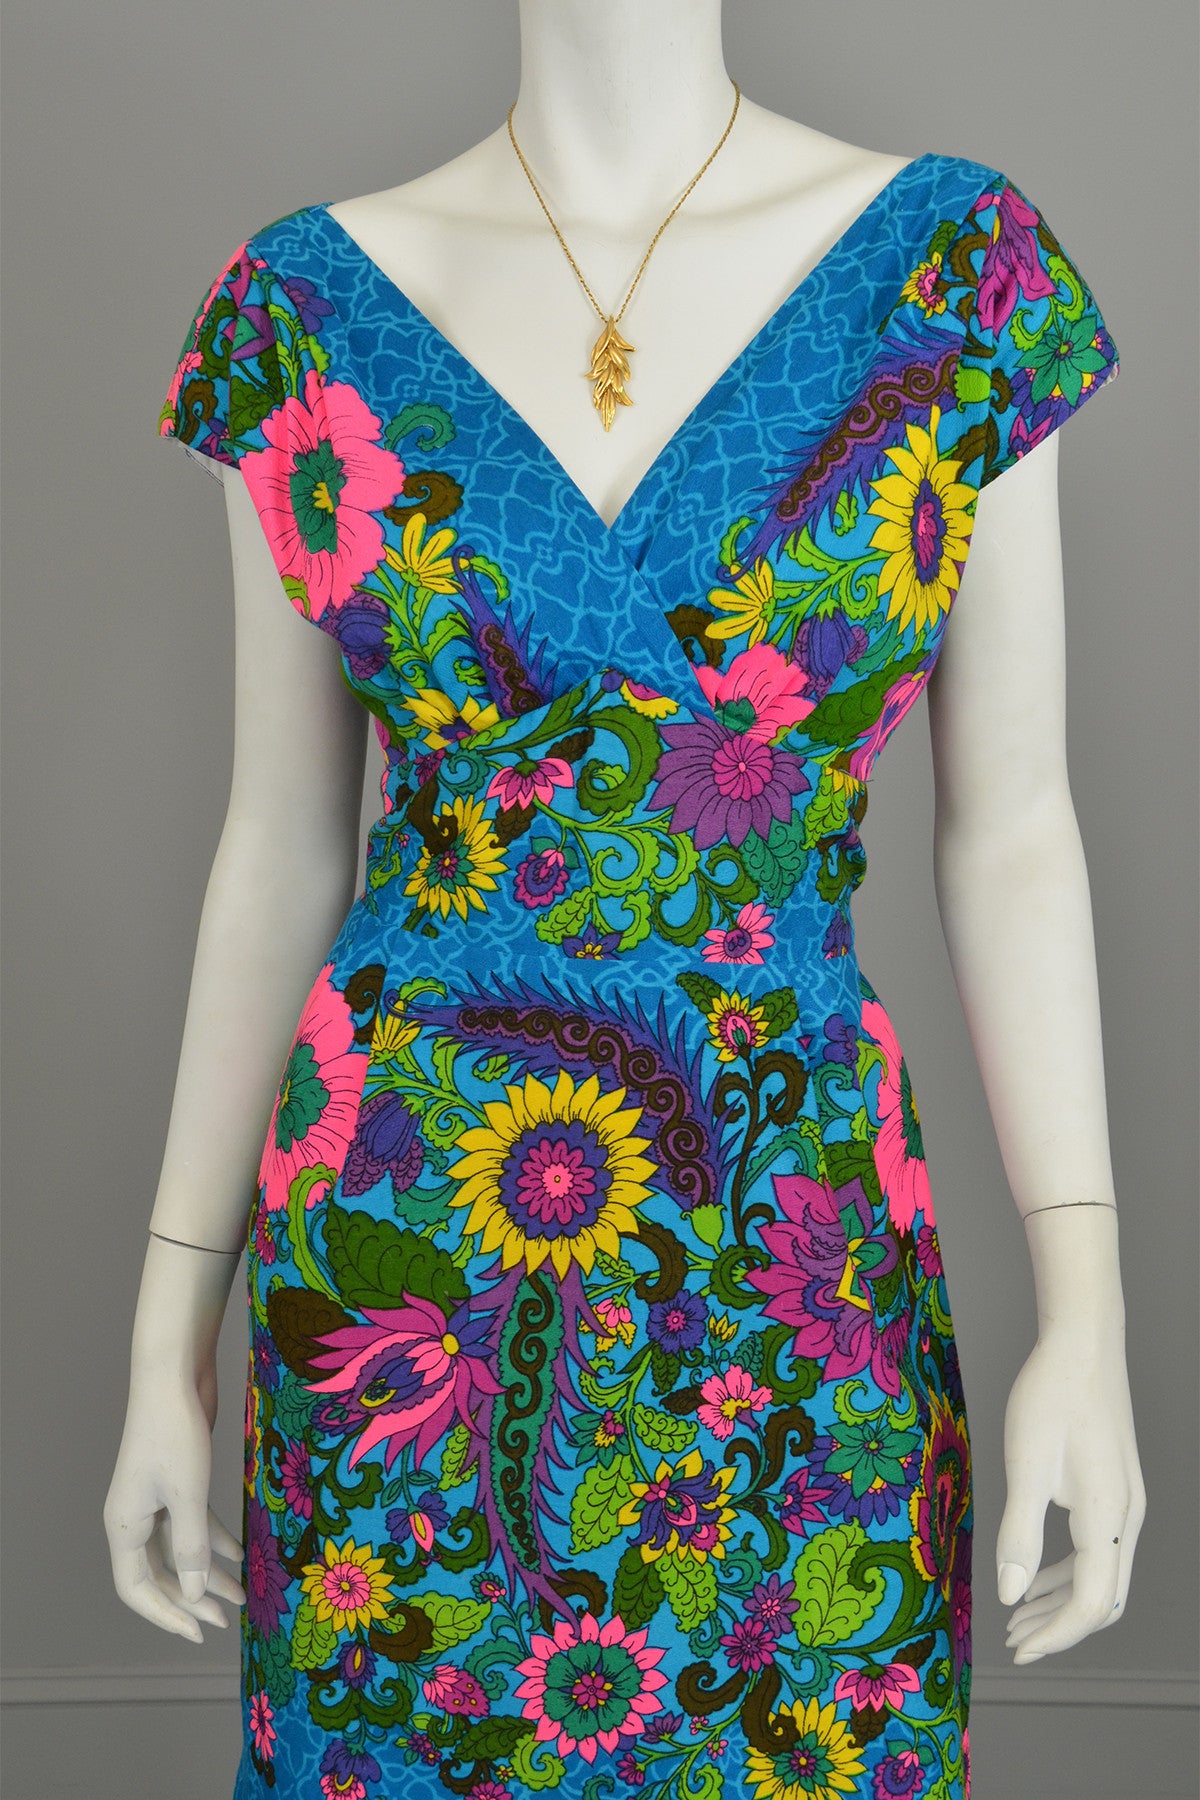 1970s Sunflowers in a Garden Dress Size M/L, Plunging neckline Bust 38", Waist 30"